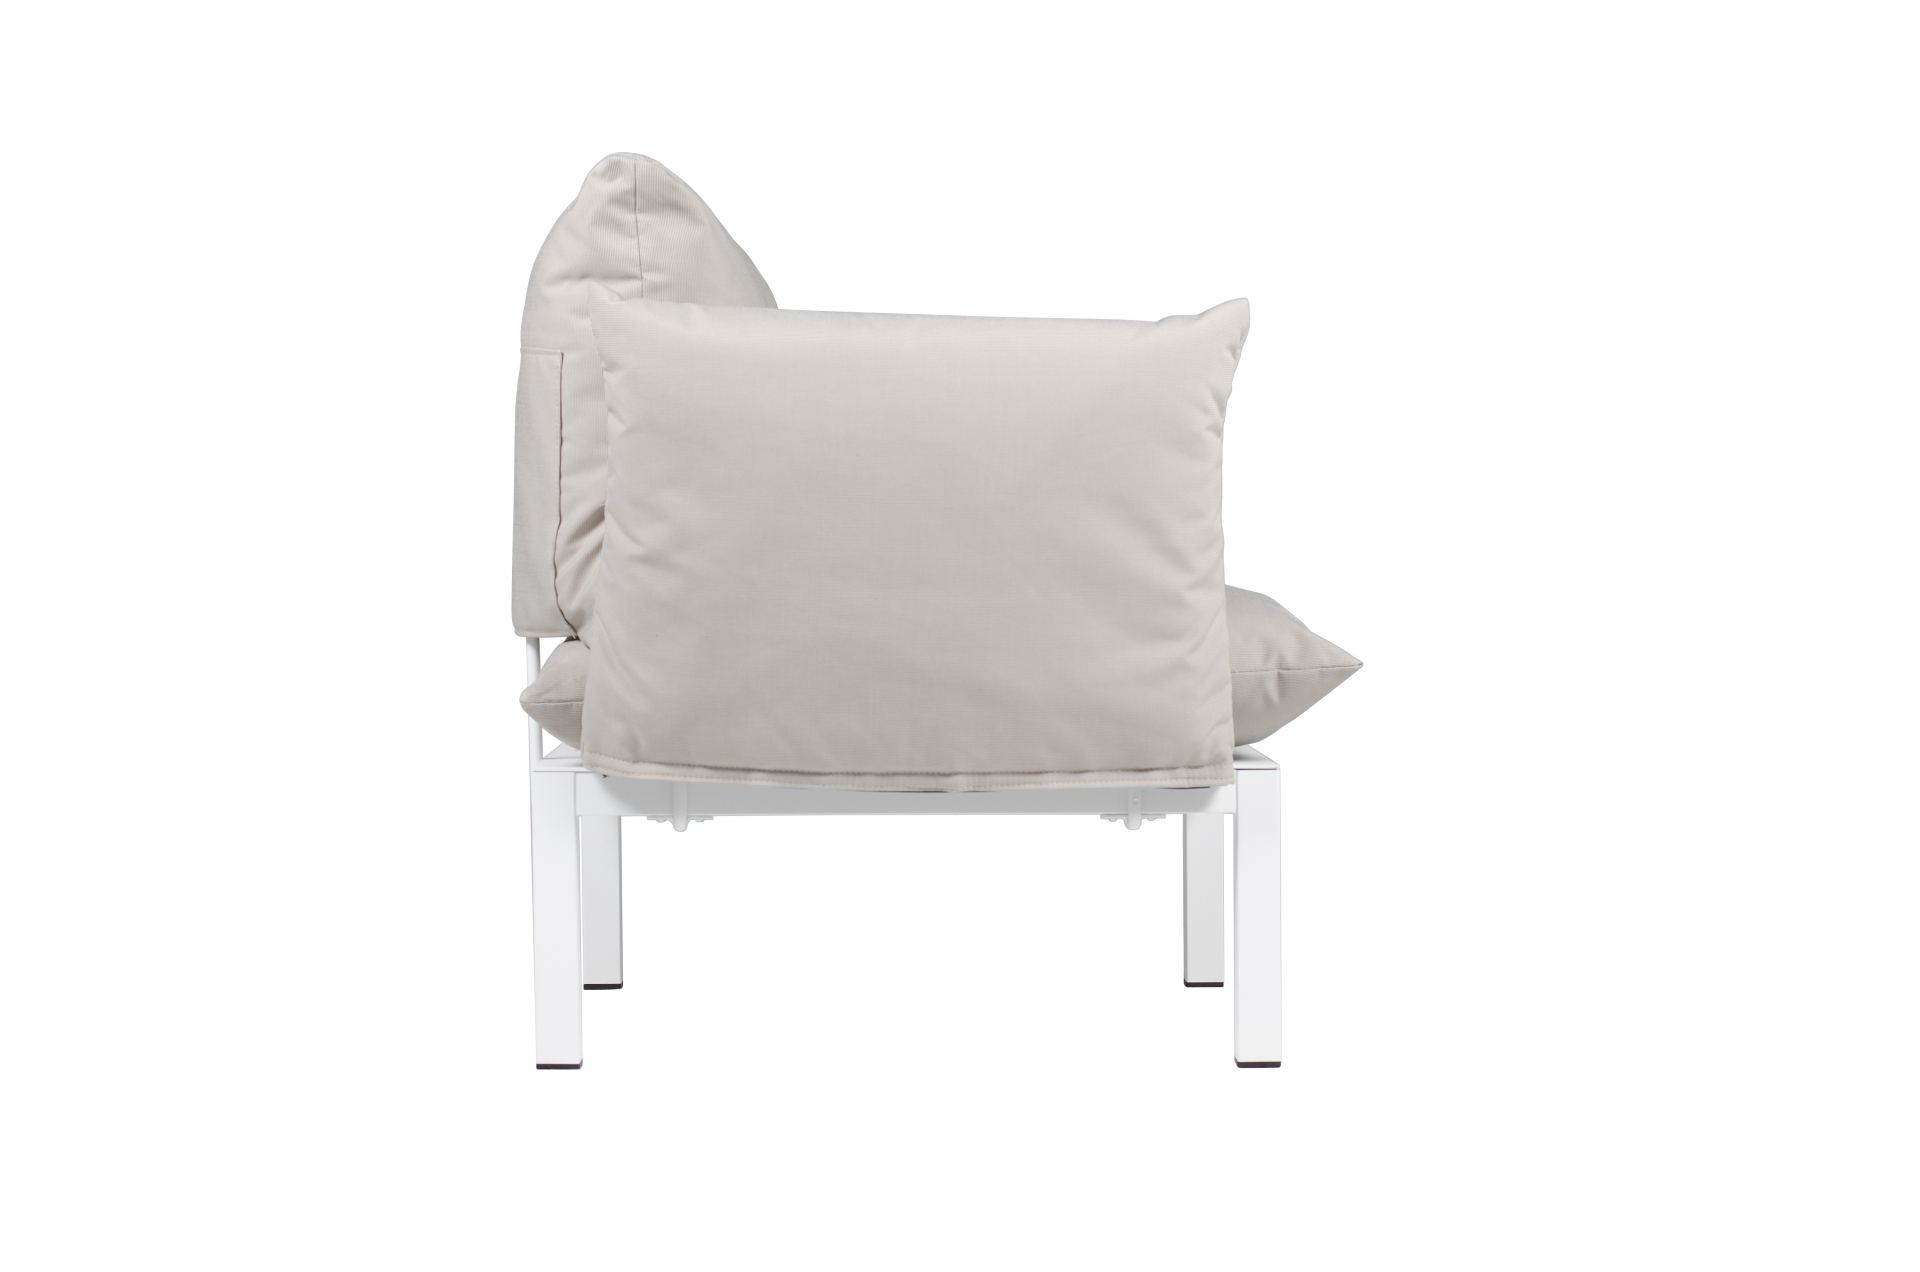 Der moderne Sessel Domino überzeugt mit seinem modernen Design. Er verfügt über ein Aluminium Gestell und ist somit perfekt für den Outdoor-Bereich einsetzbar. Designet wurde er von der Marke Jan Kurtz. Und hat die Farbkombination Gestell Weiß und Bezug T